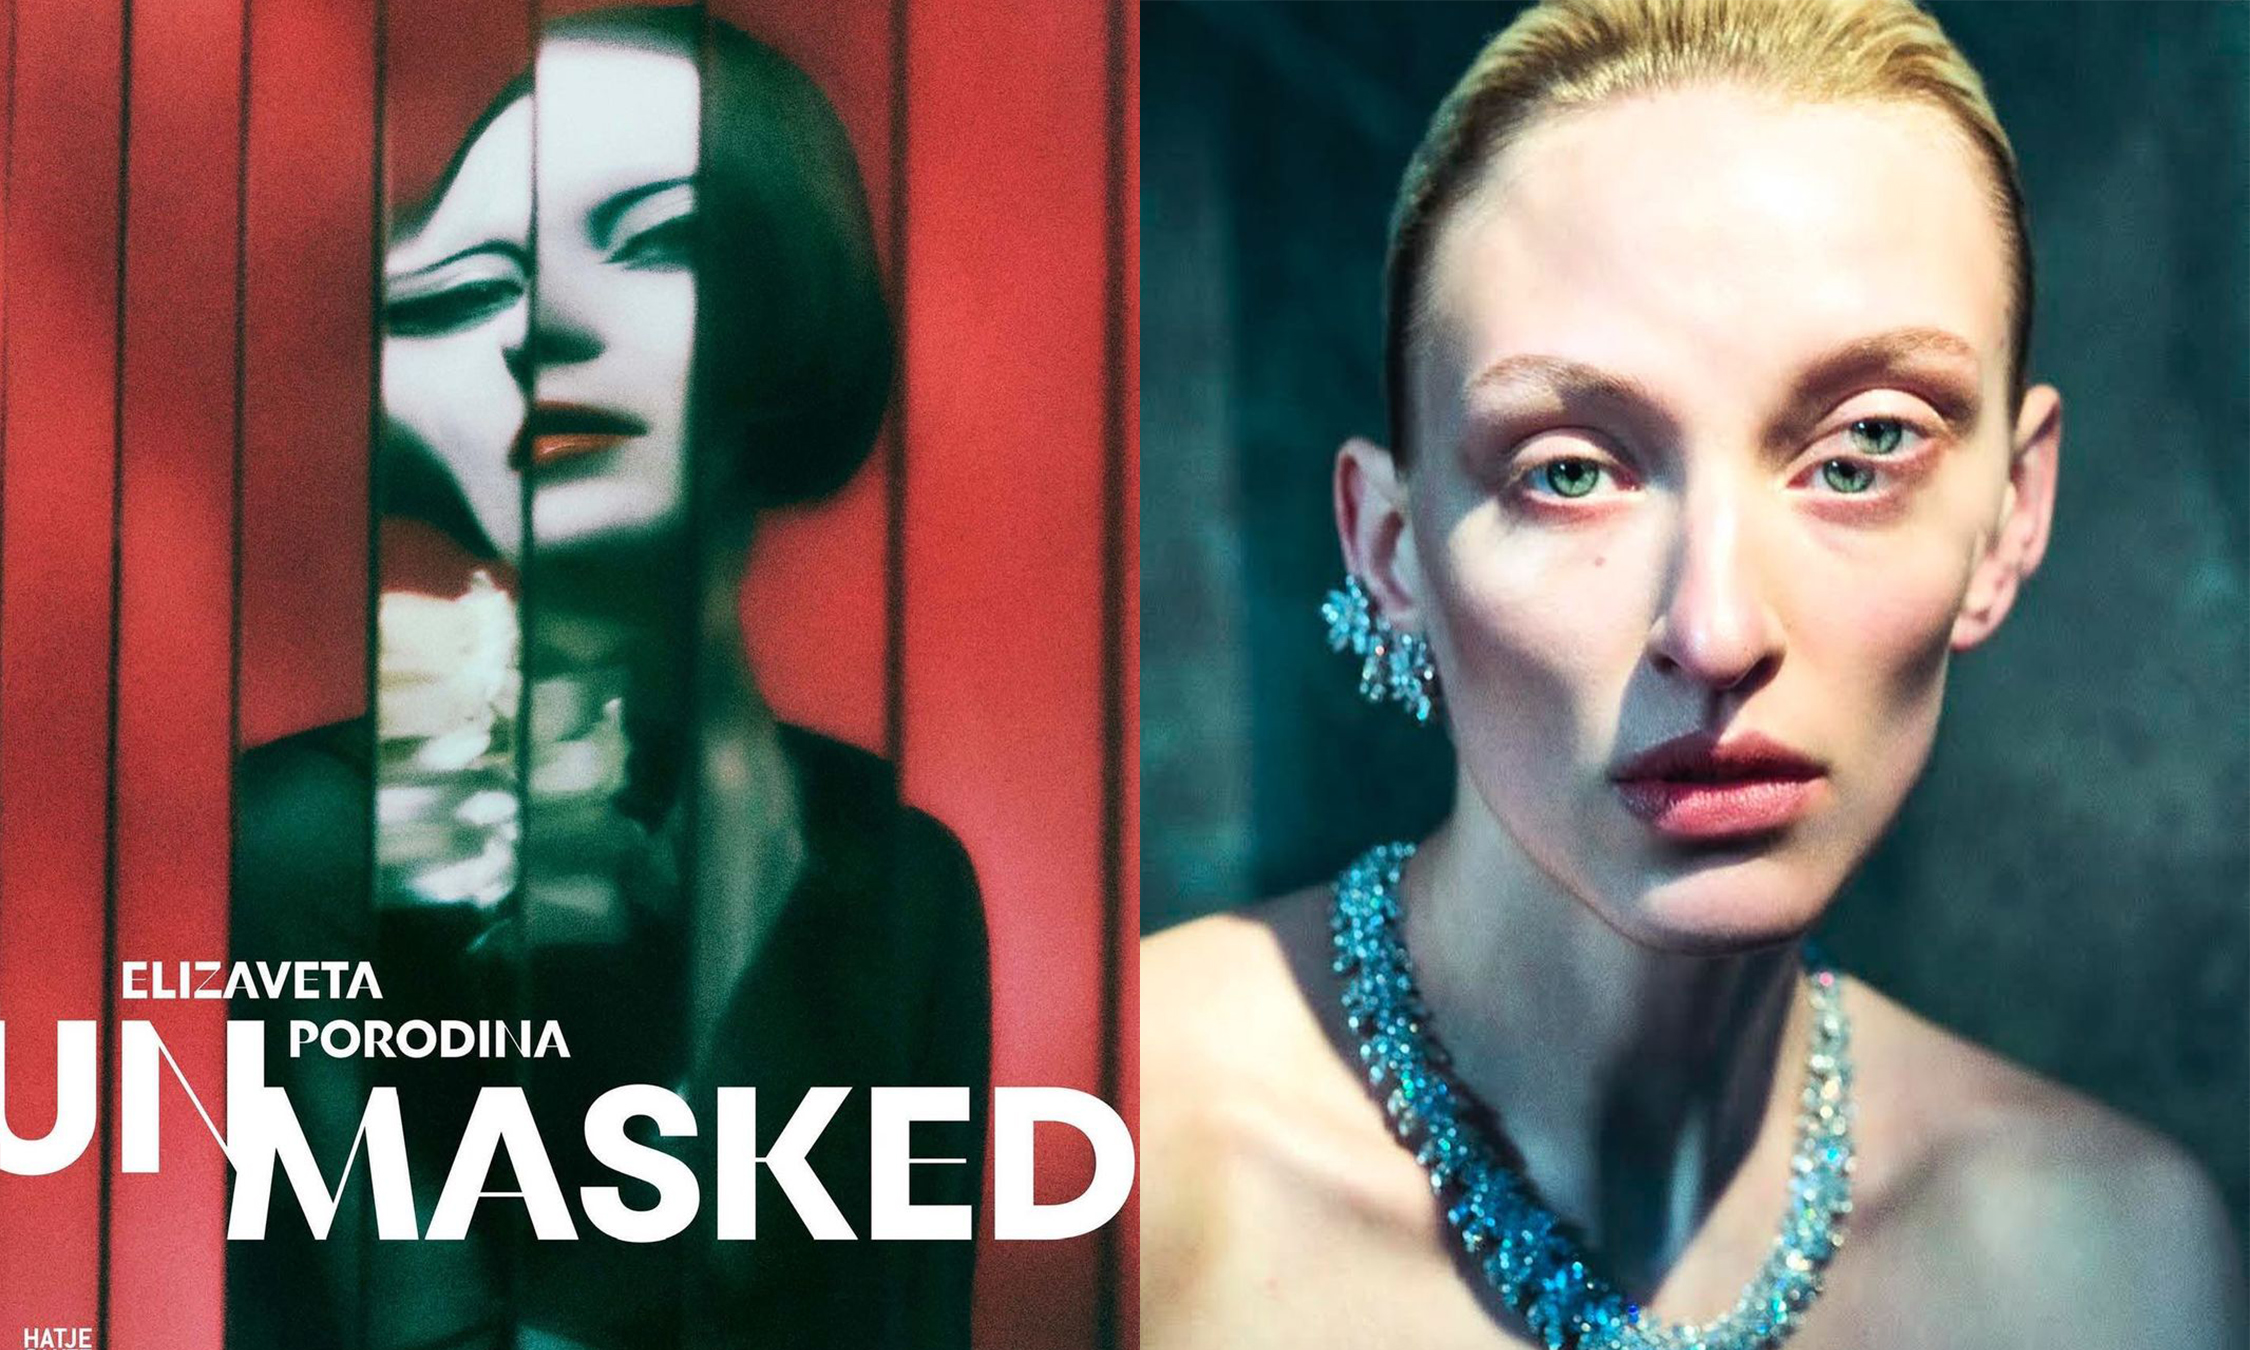 知名摄影师 Elizaveta Porodina 推出首本摄影书籍《UN/MASKED》